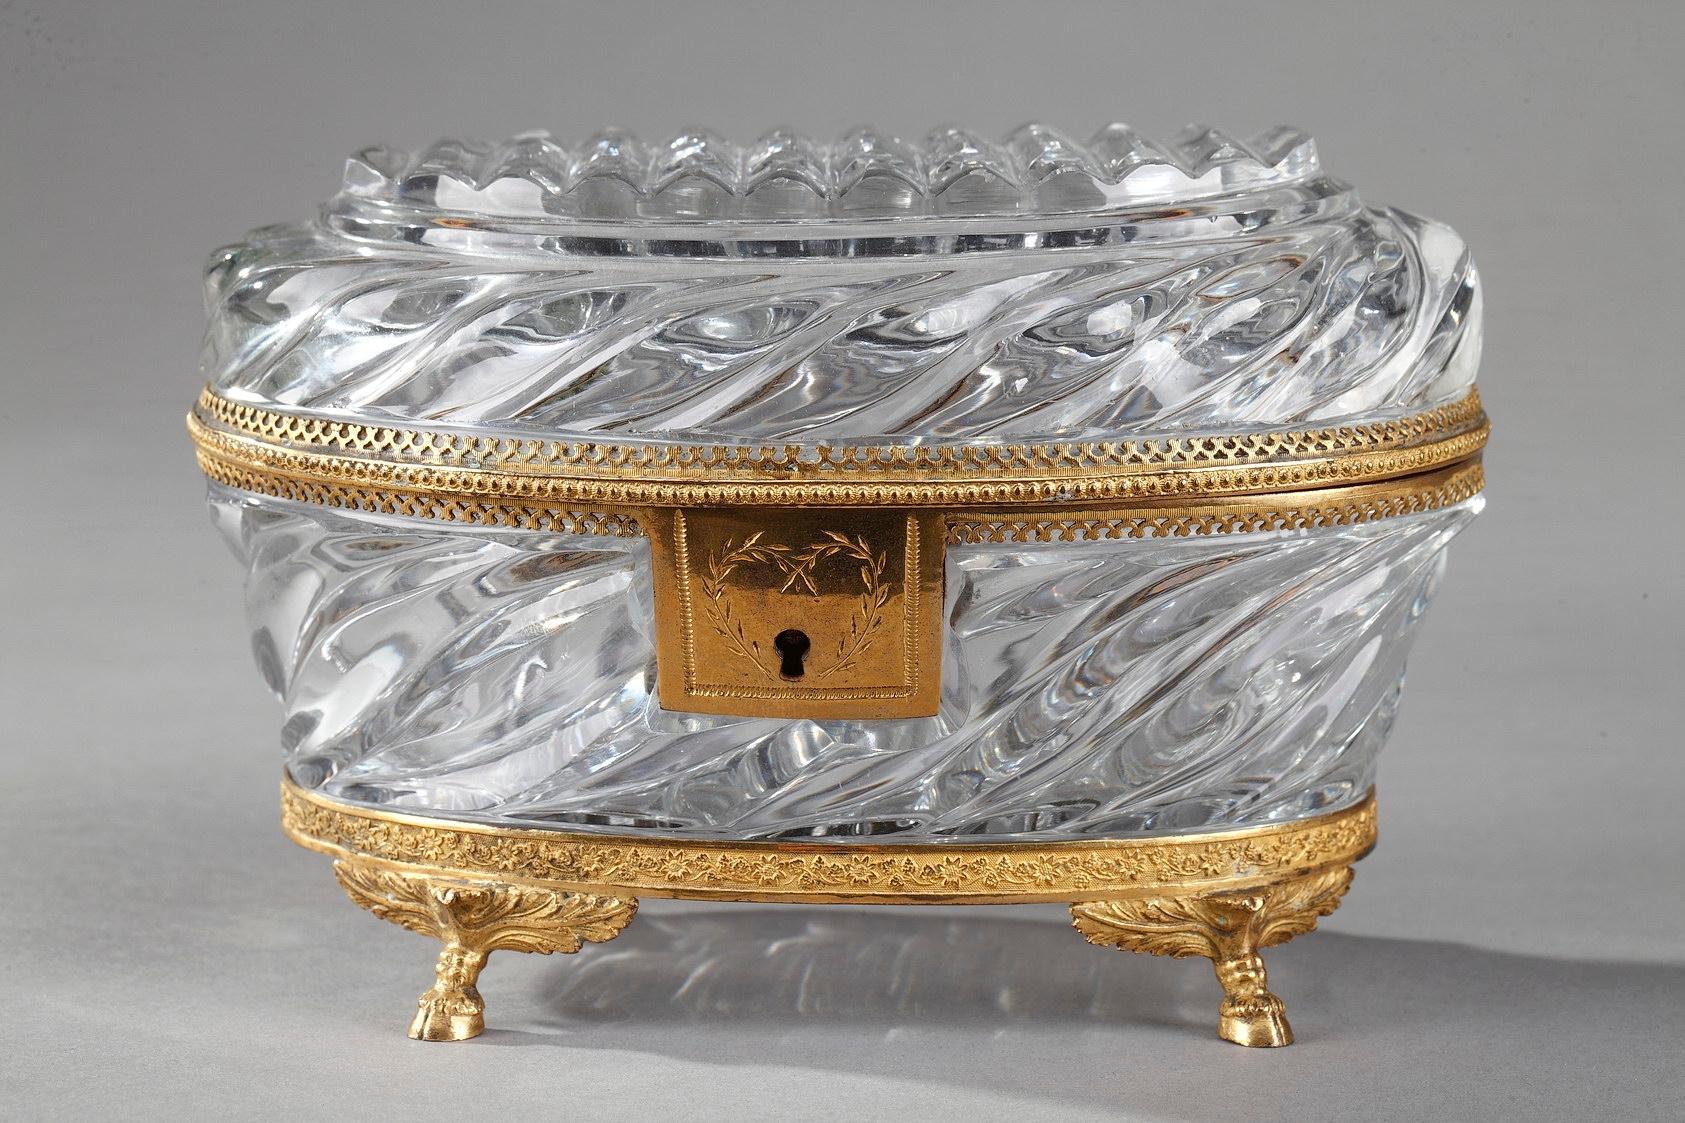 Exquise boîte à bijoux ancienne en cristal taillé de forme ovale. Le cristal est ciselé en motifs torsadés et les montures sont en bronze doré, décoré de petites fleurs, de perles et d'entrelacs ajourés. Cette boîte antique repose sur quatre pieds à